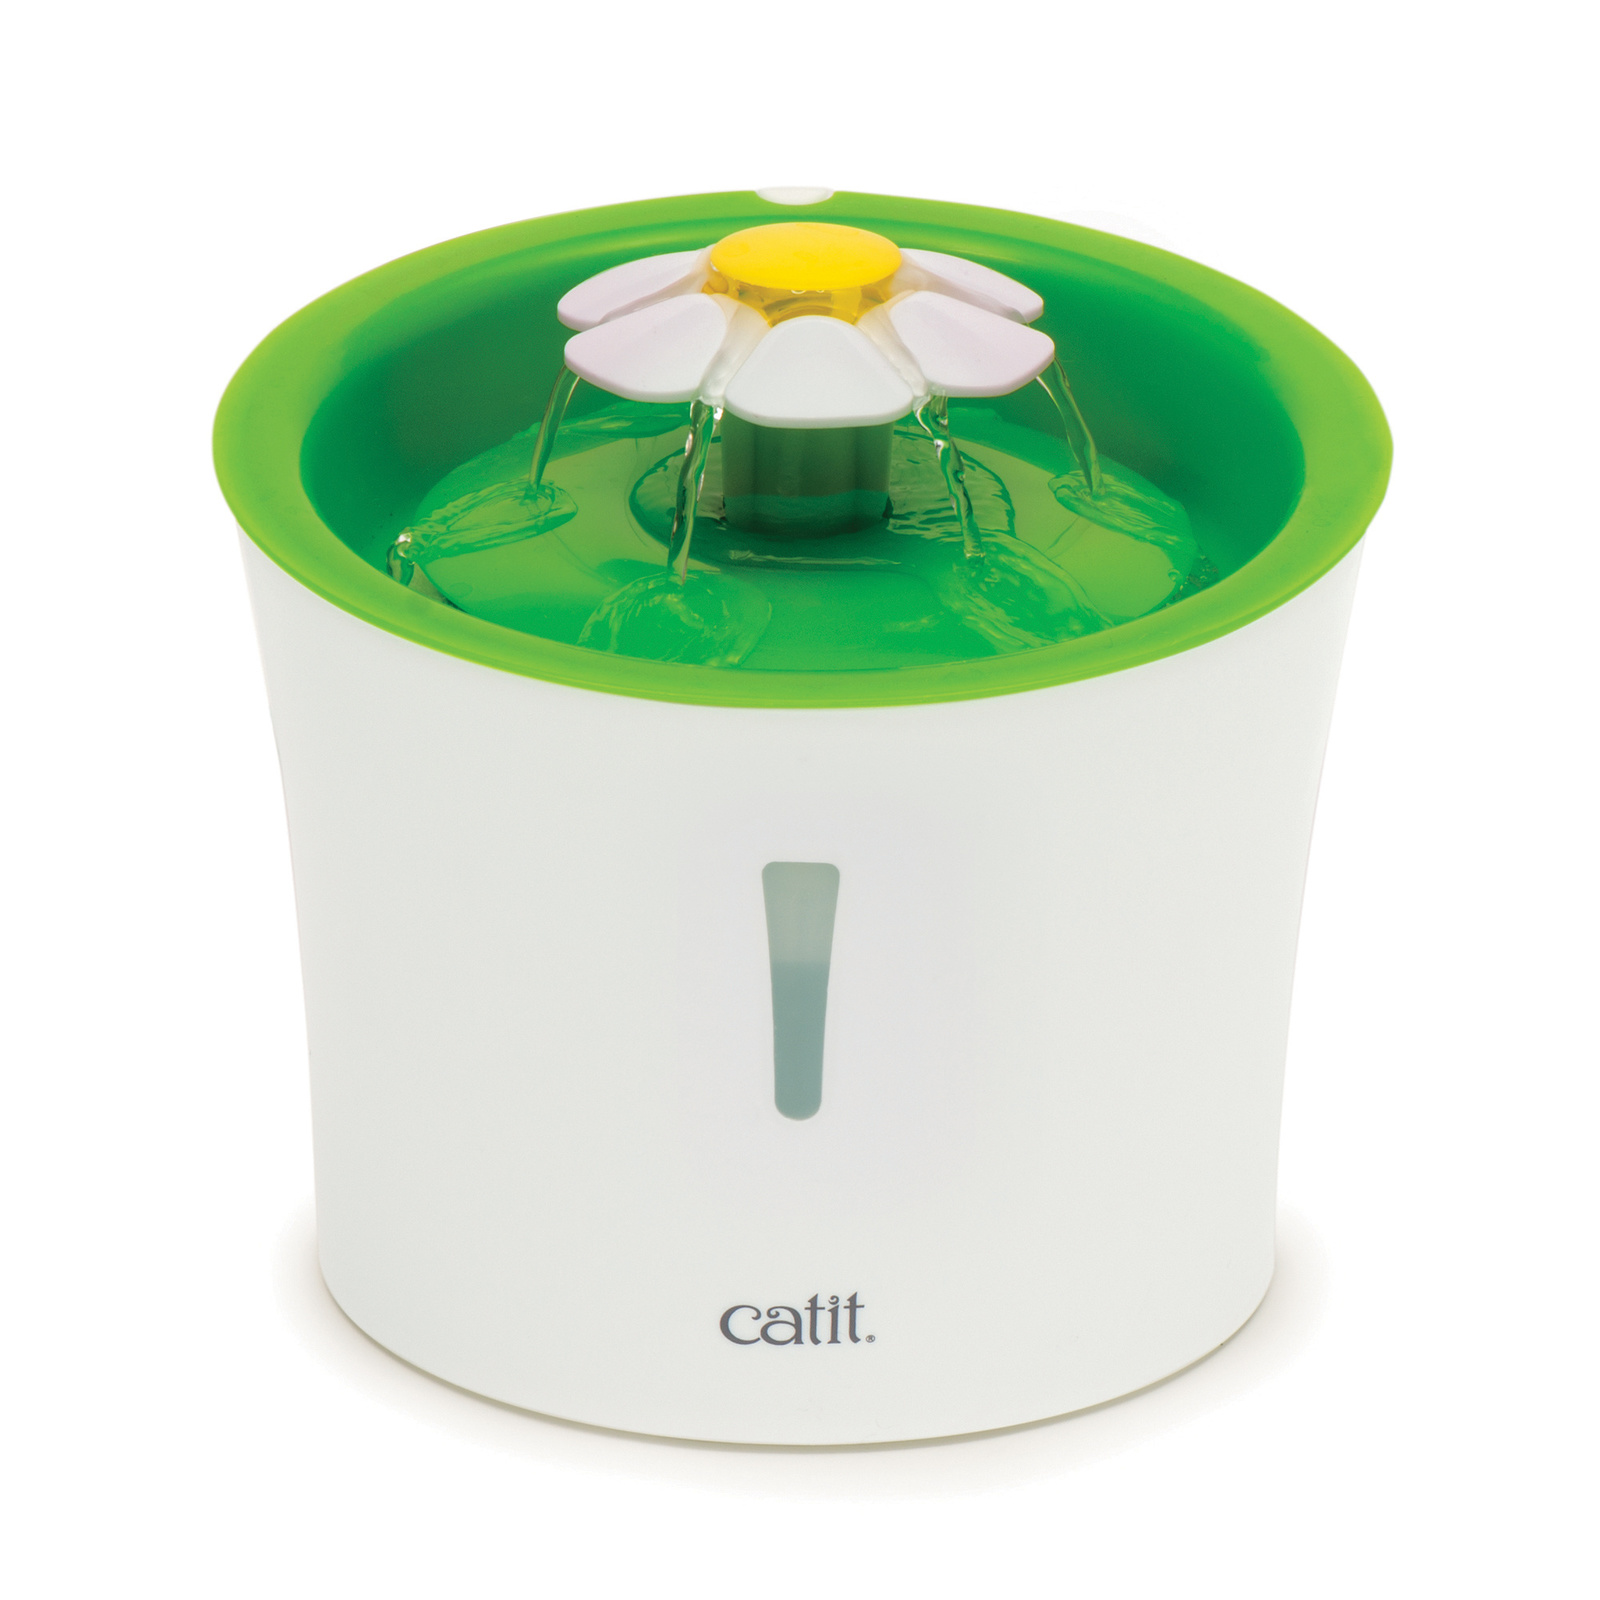 Catit Catit senses 2.0 Поилка-фонтан Цветок (820 г)